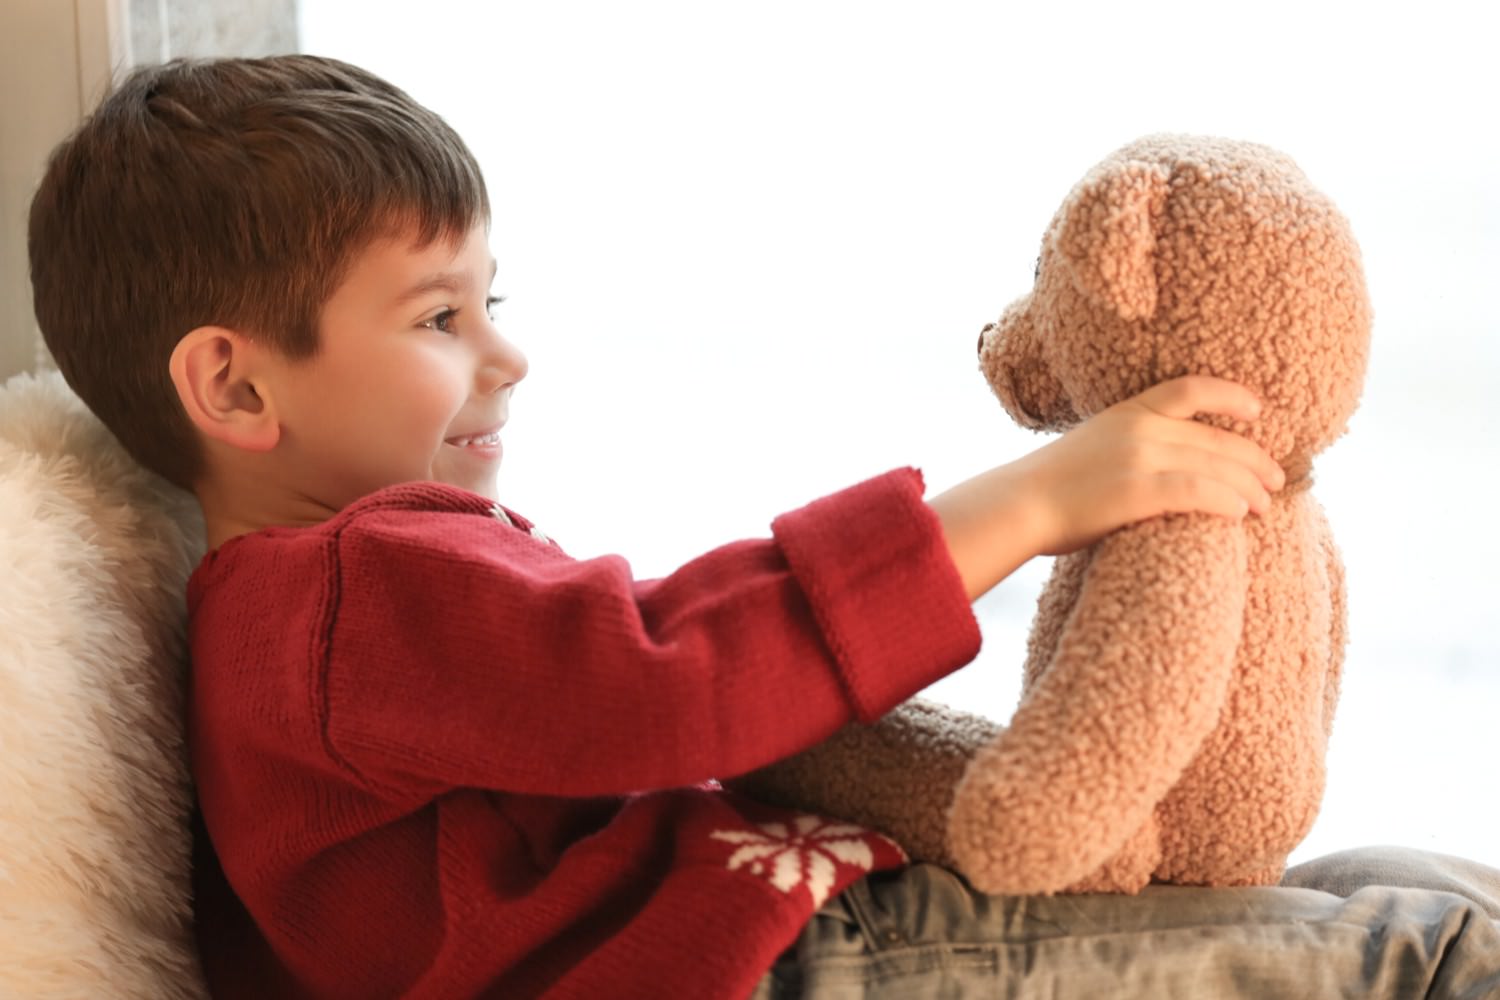 Bild zeigt: Kleiner Junge lacht mit seinem Teddybär